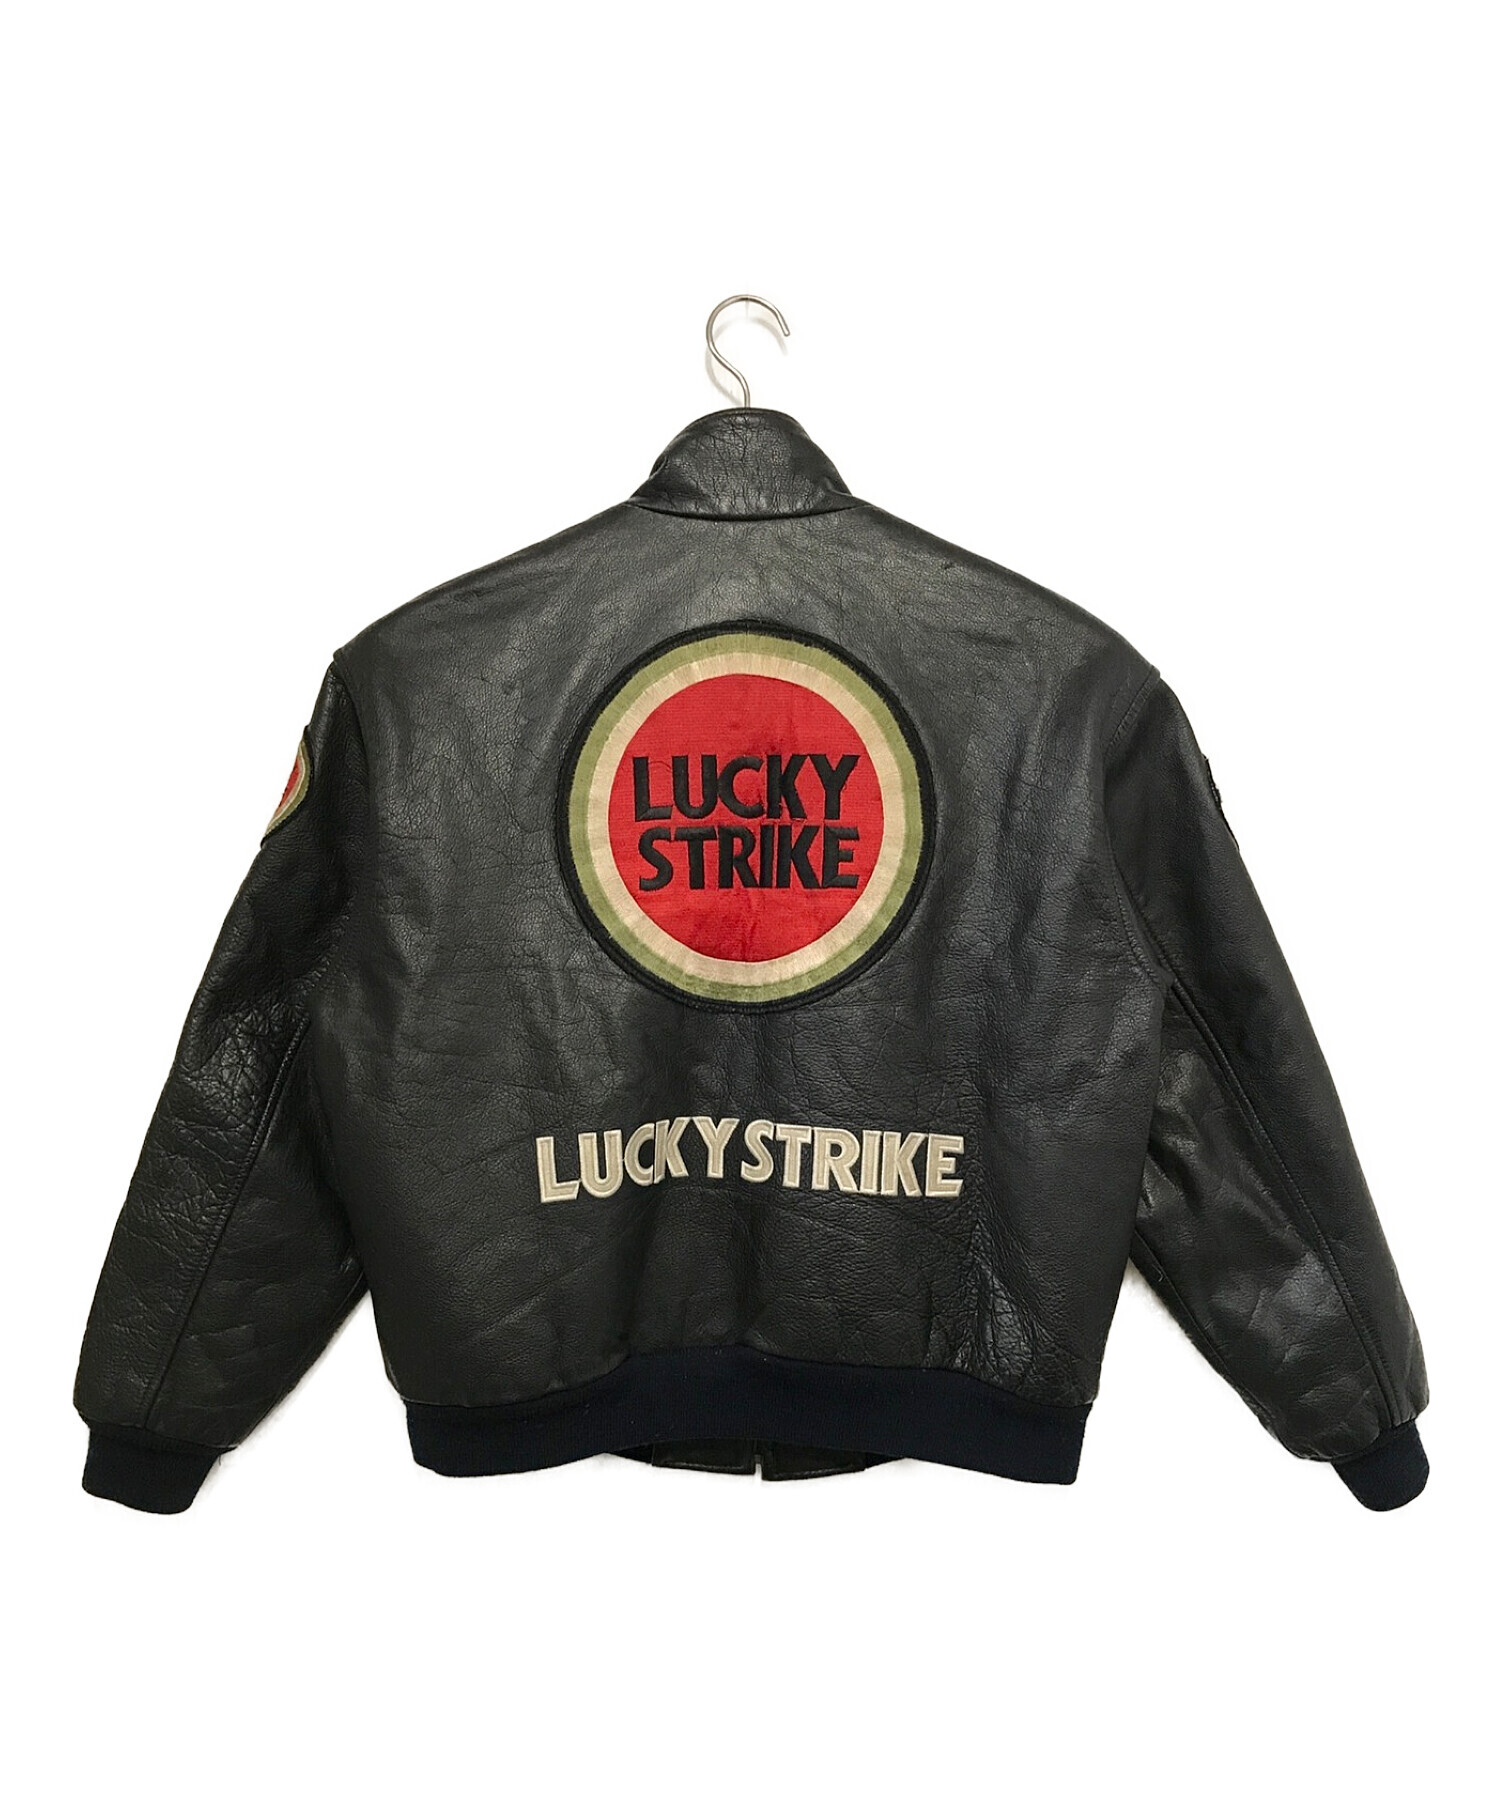 LUCKY STRIKE(ラッキーストライク)ライダースジャケット - ライダース 